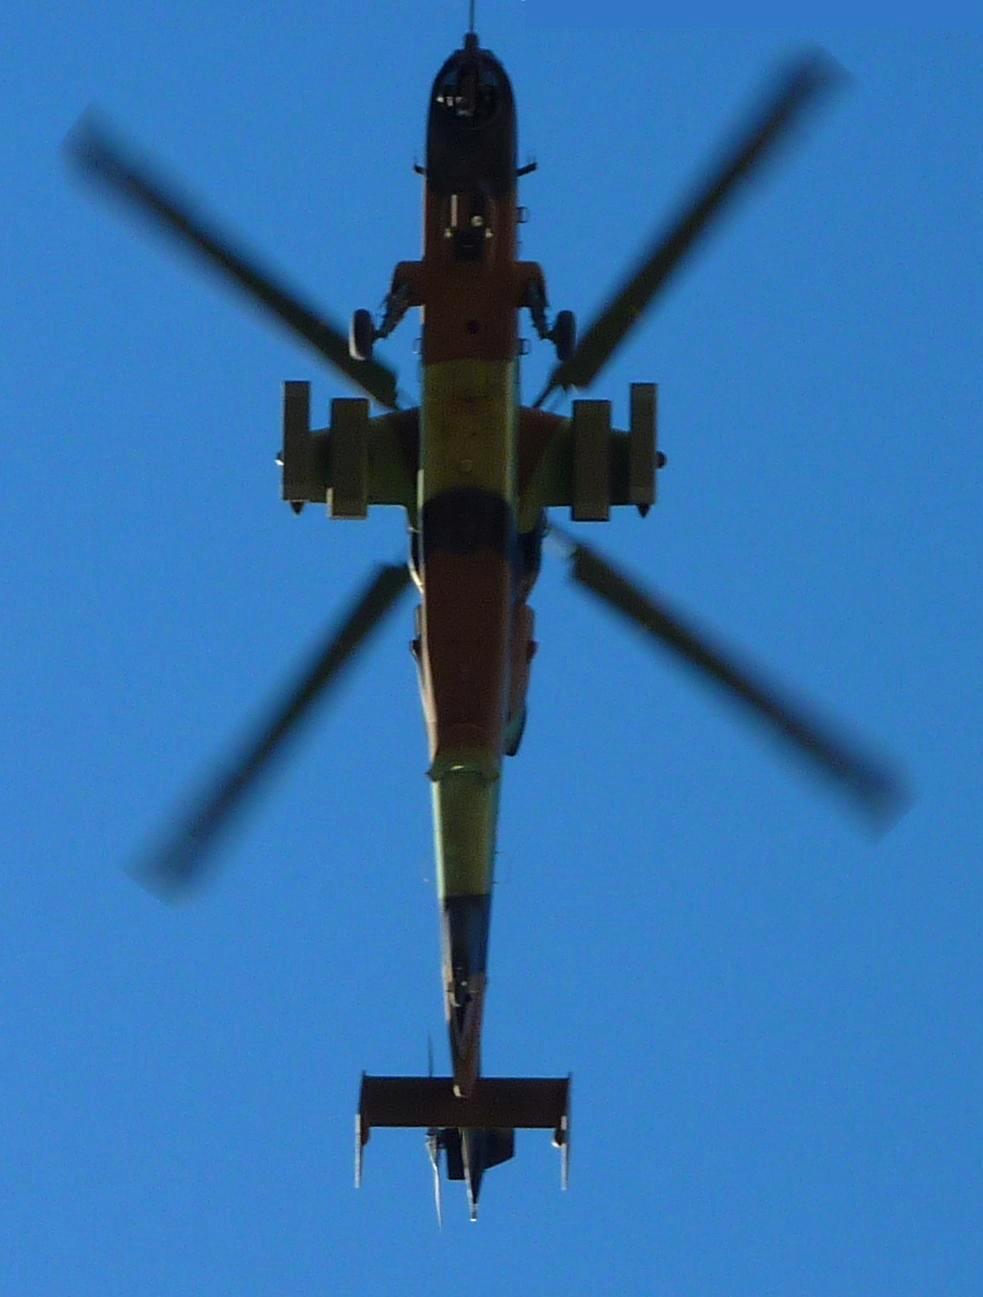 Helicóptero Tigre volando visto desde abajo